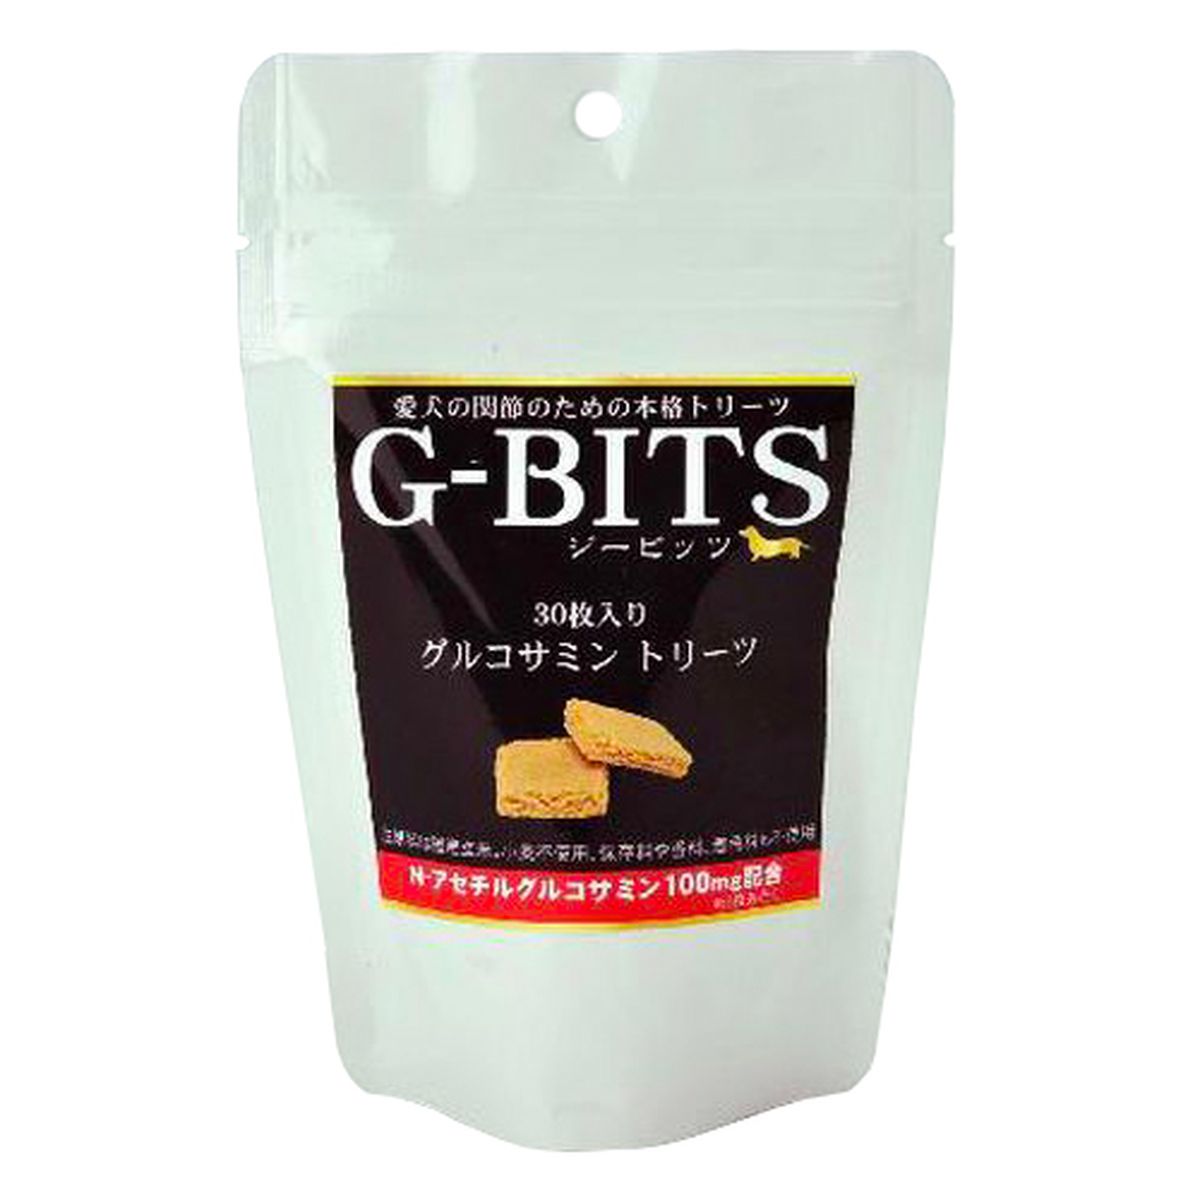 G‐BITS グルコサミントリーツ 75g/約30枚入リ×30